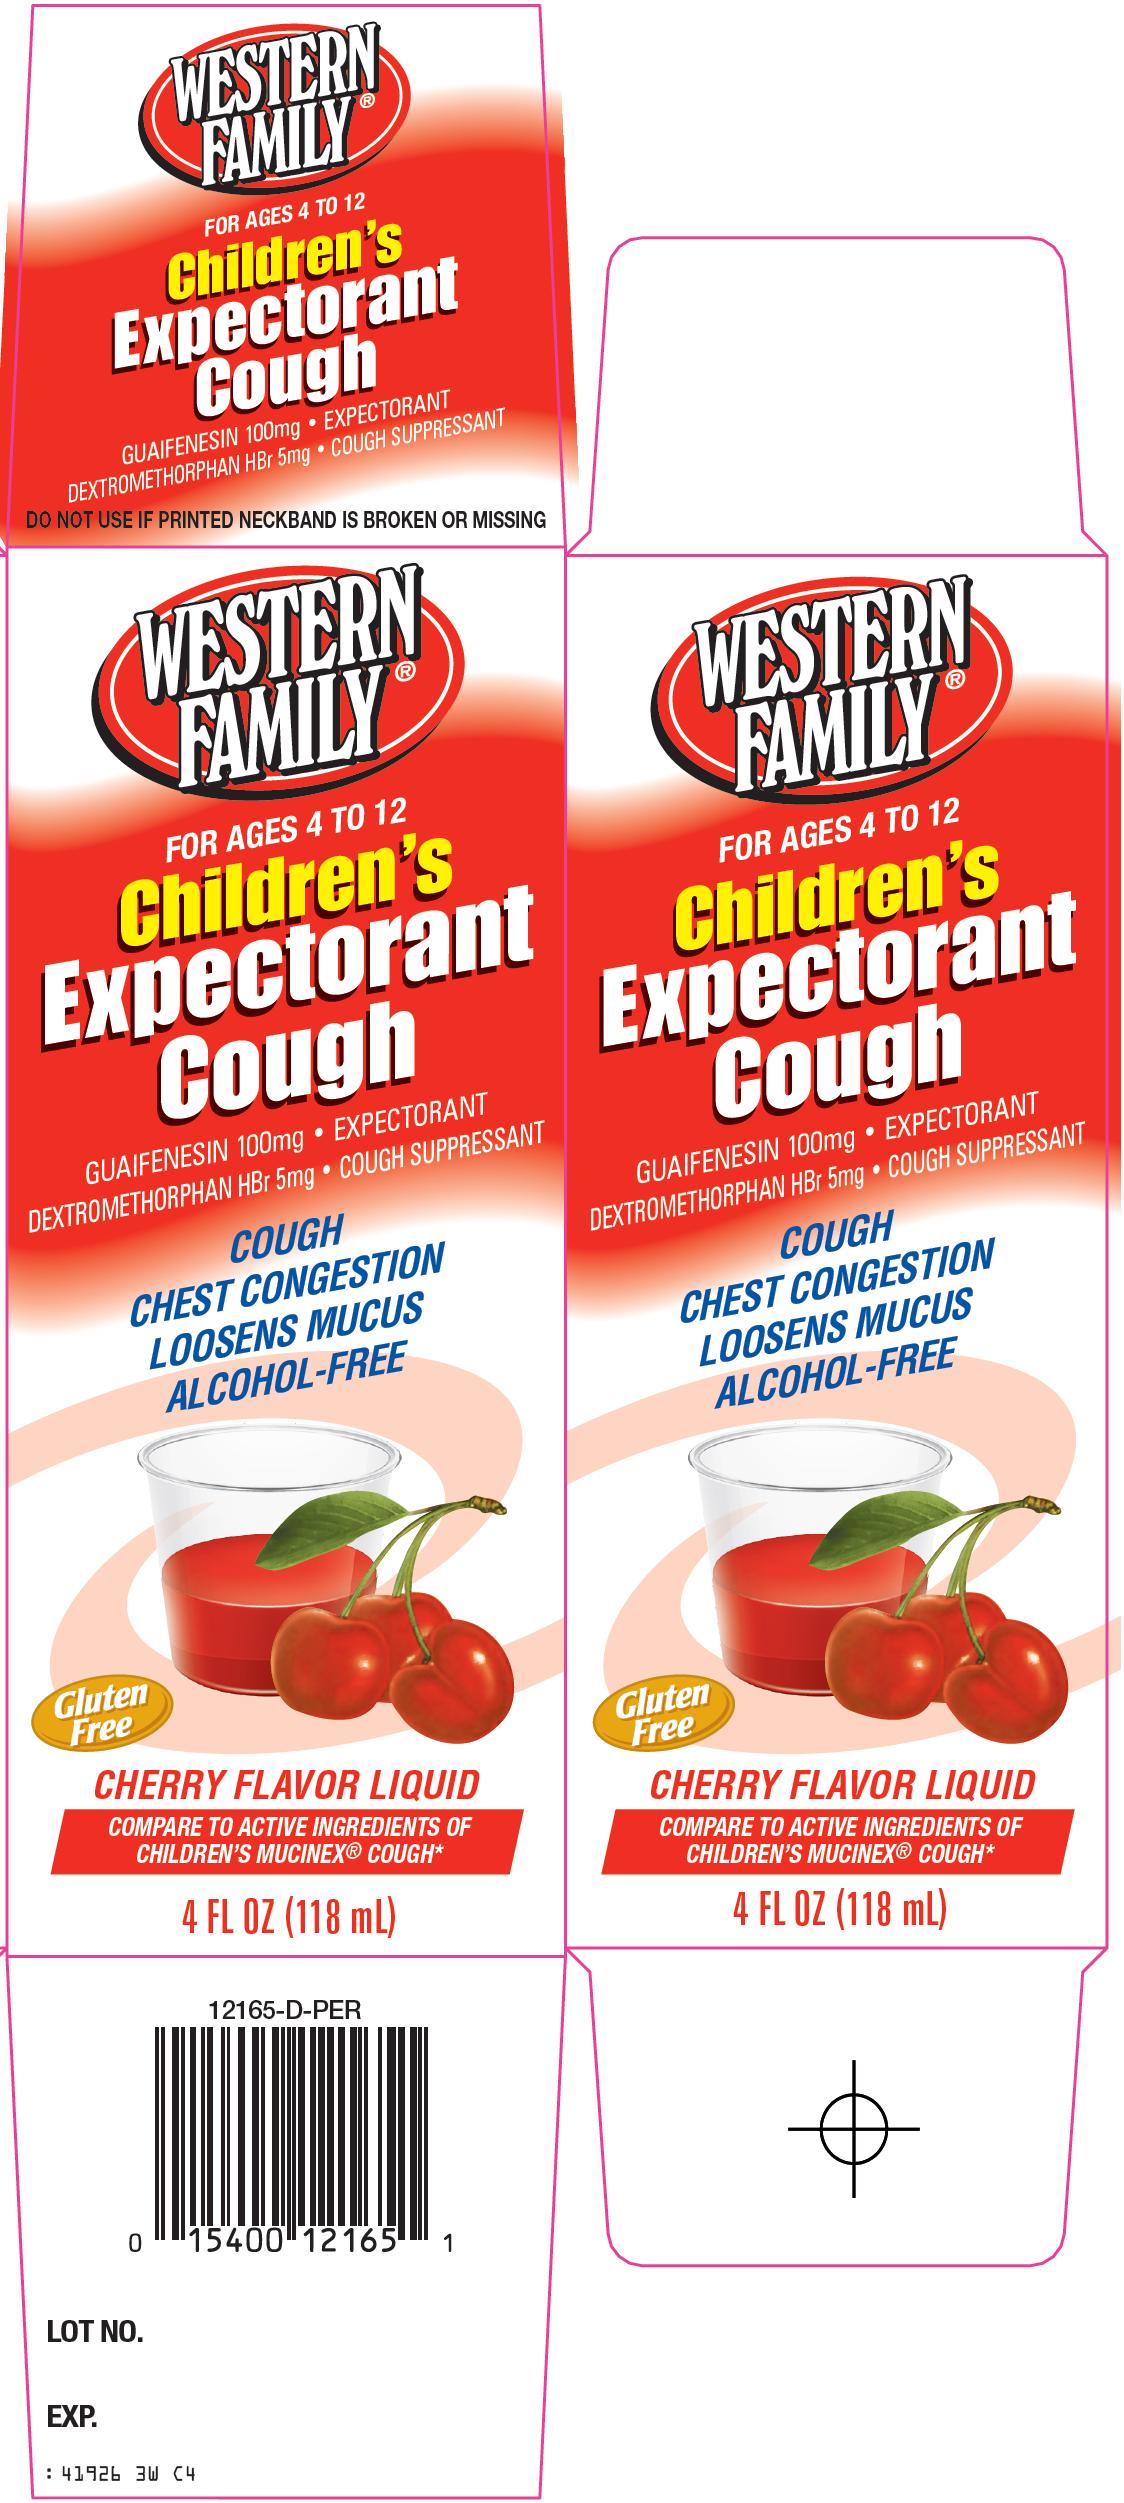 Children's Expectorant Cough Carton Image 1